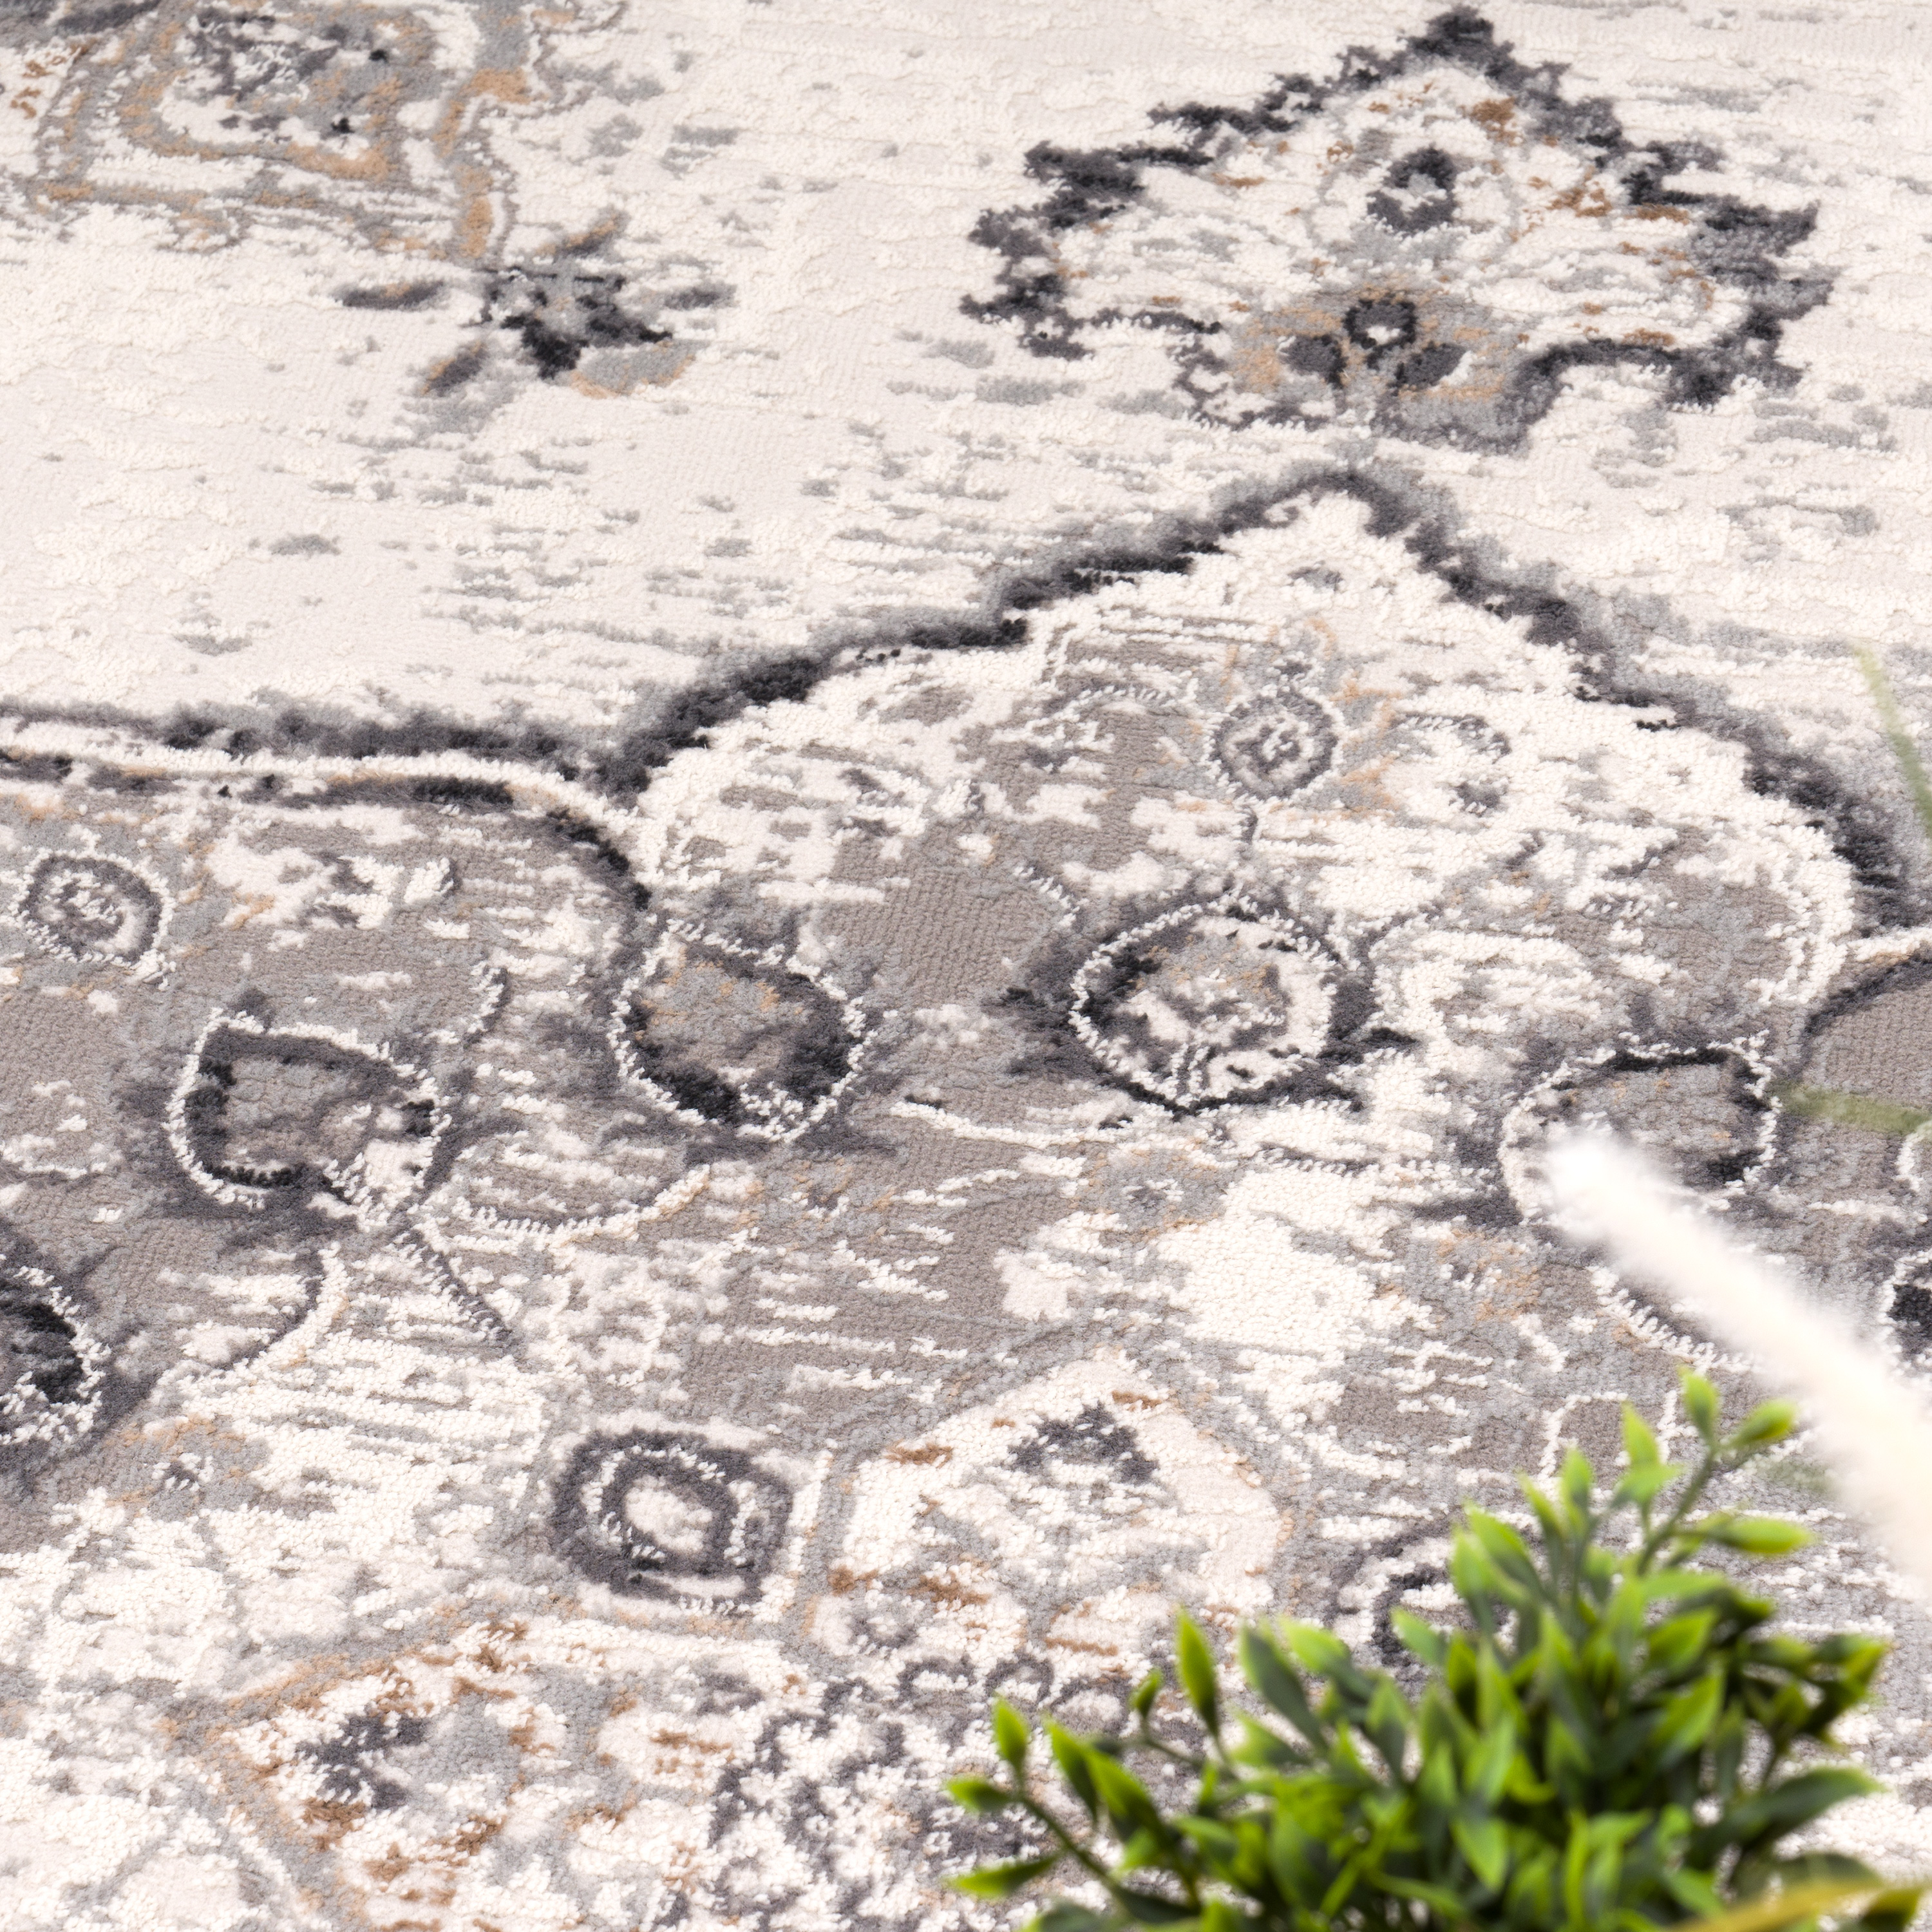 Teppich Esszimmer Orientalisches Muster Mandala Grau Orientalisch